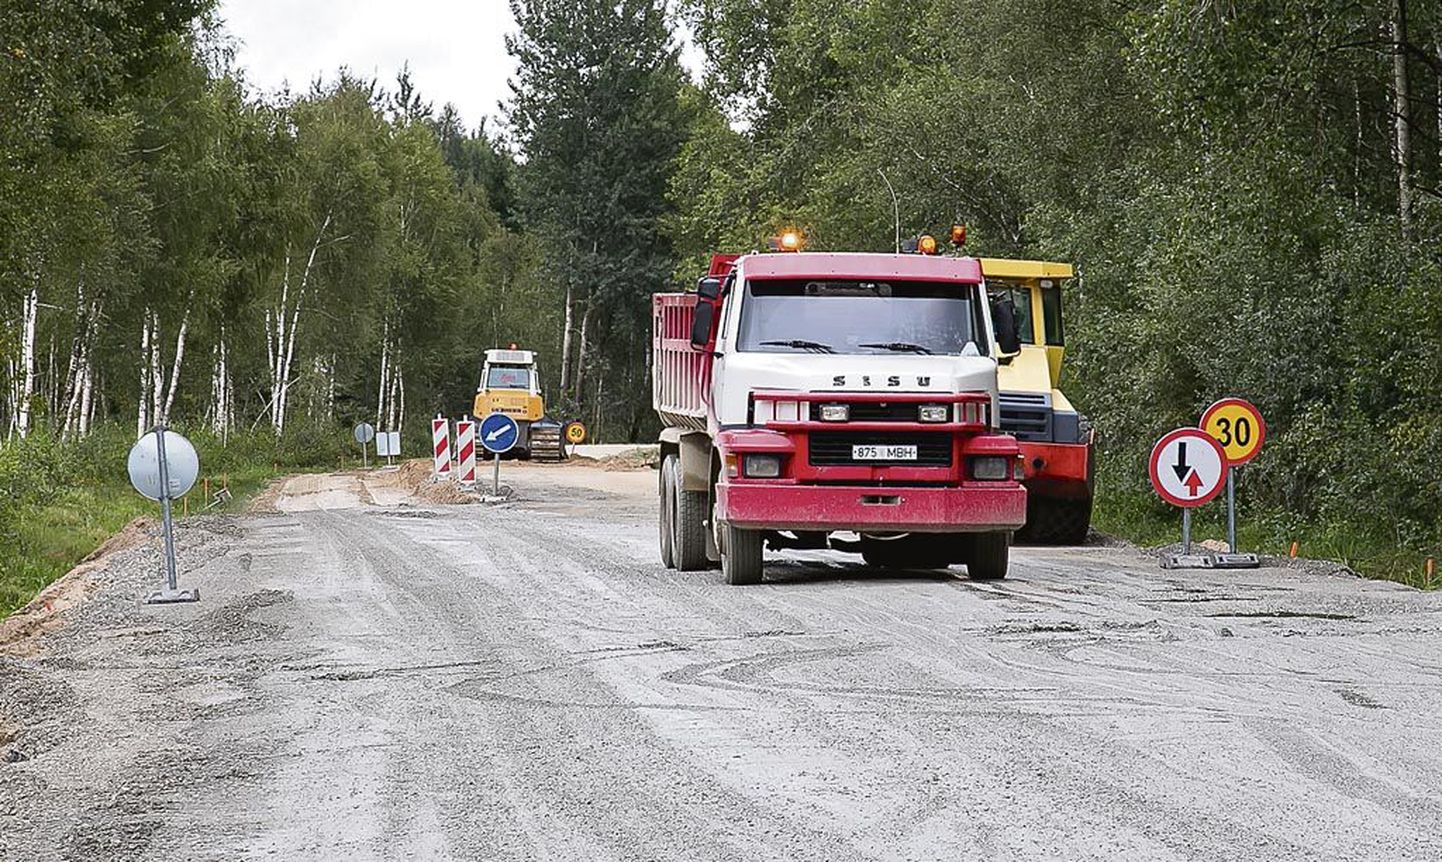 Riigimaanteel Koonga ja Pärnu-Jaagupi vahel on terve suve kestnud remont, mis läheb hilissügisesse välja. Ligi 17kilomeetrine tee jaguneb kahe firma vahel ja kruuskatte ehitamise maksumus ulatub 2,4 miljoni euroni.